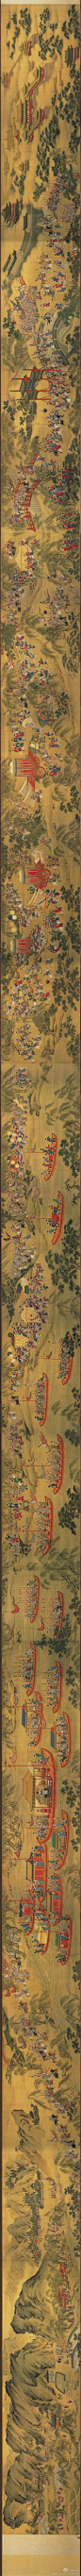 明 佚名《入跸图卷》绢本 设色 横：3003.6cm 纵：92.1cm 藏台北故宫。再说说入跸图，入跸图传统观赏则由左往右，绘皇帝谒陵完毕坐船，走水路还宫的情景。